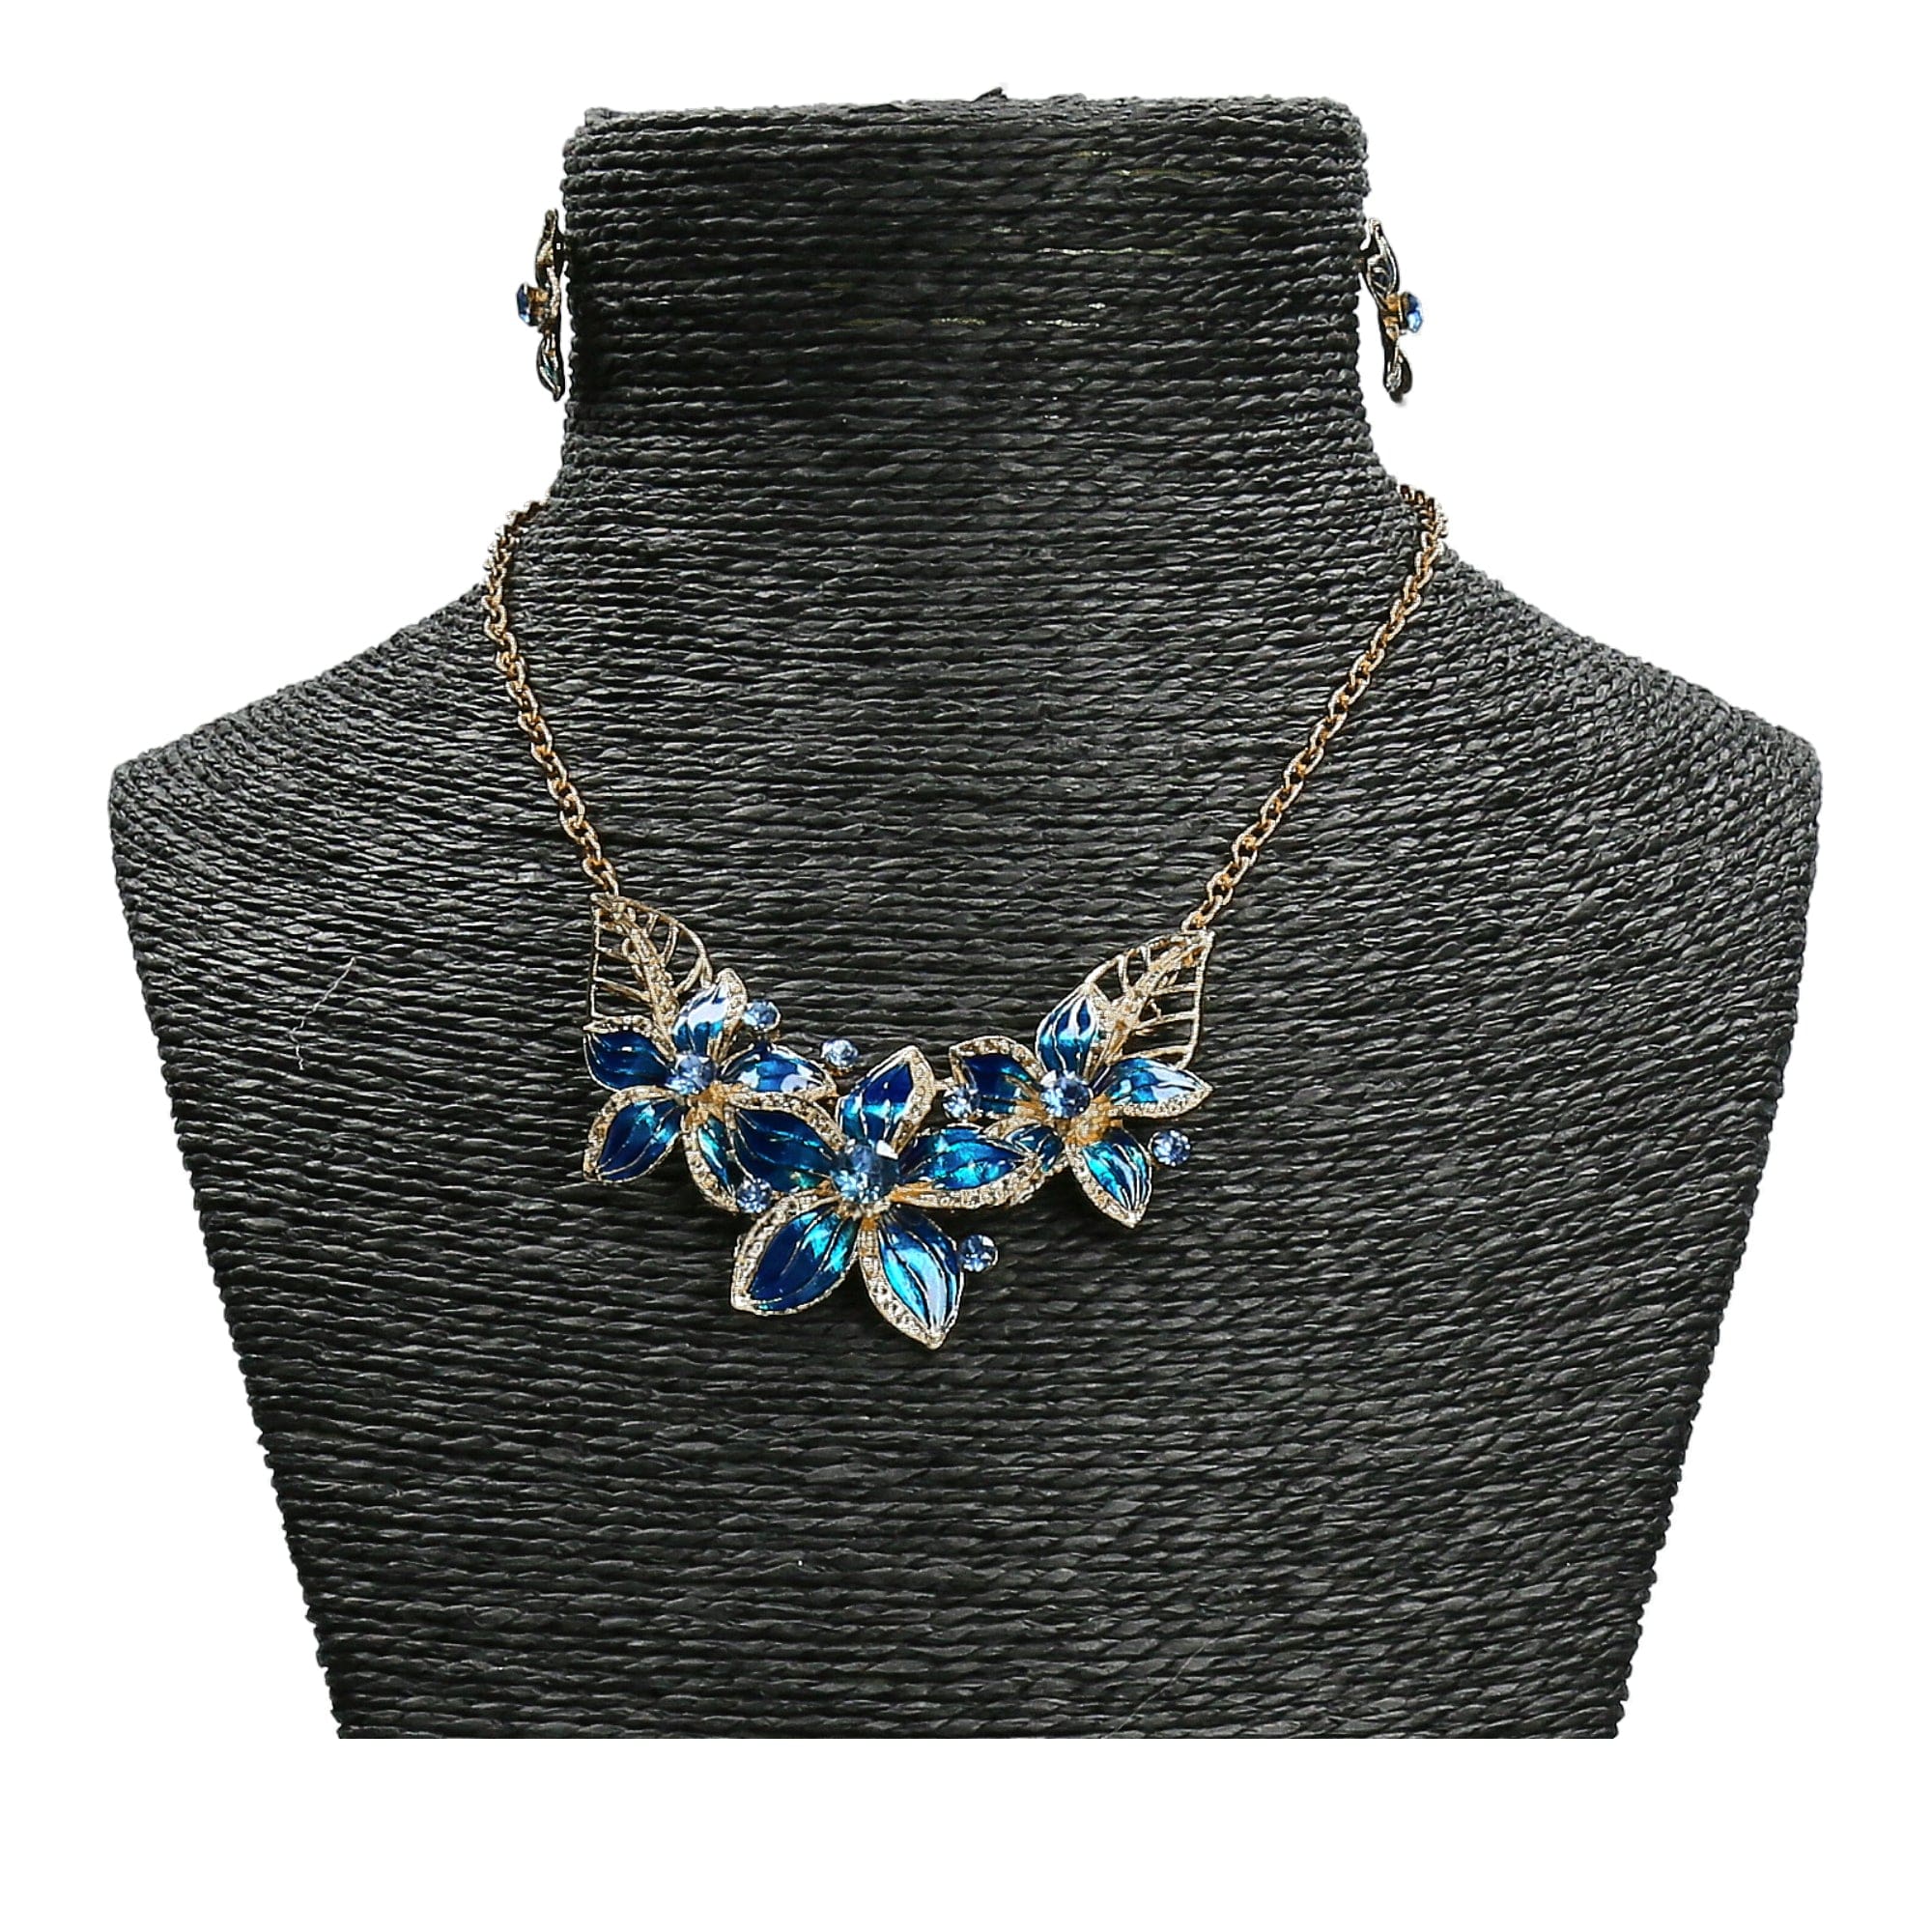 Juwelenset Cassiopé - Blauw - Ketting